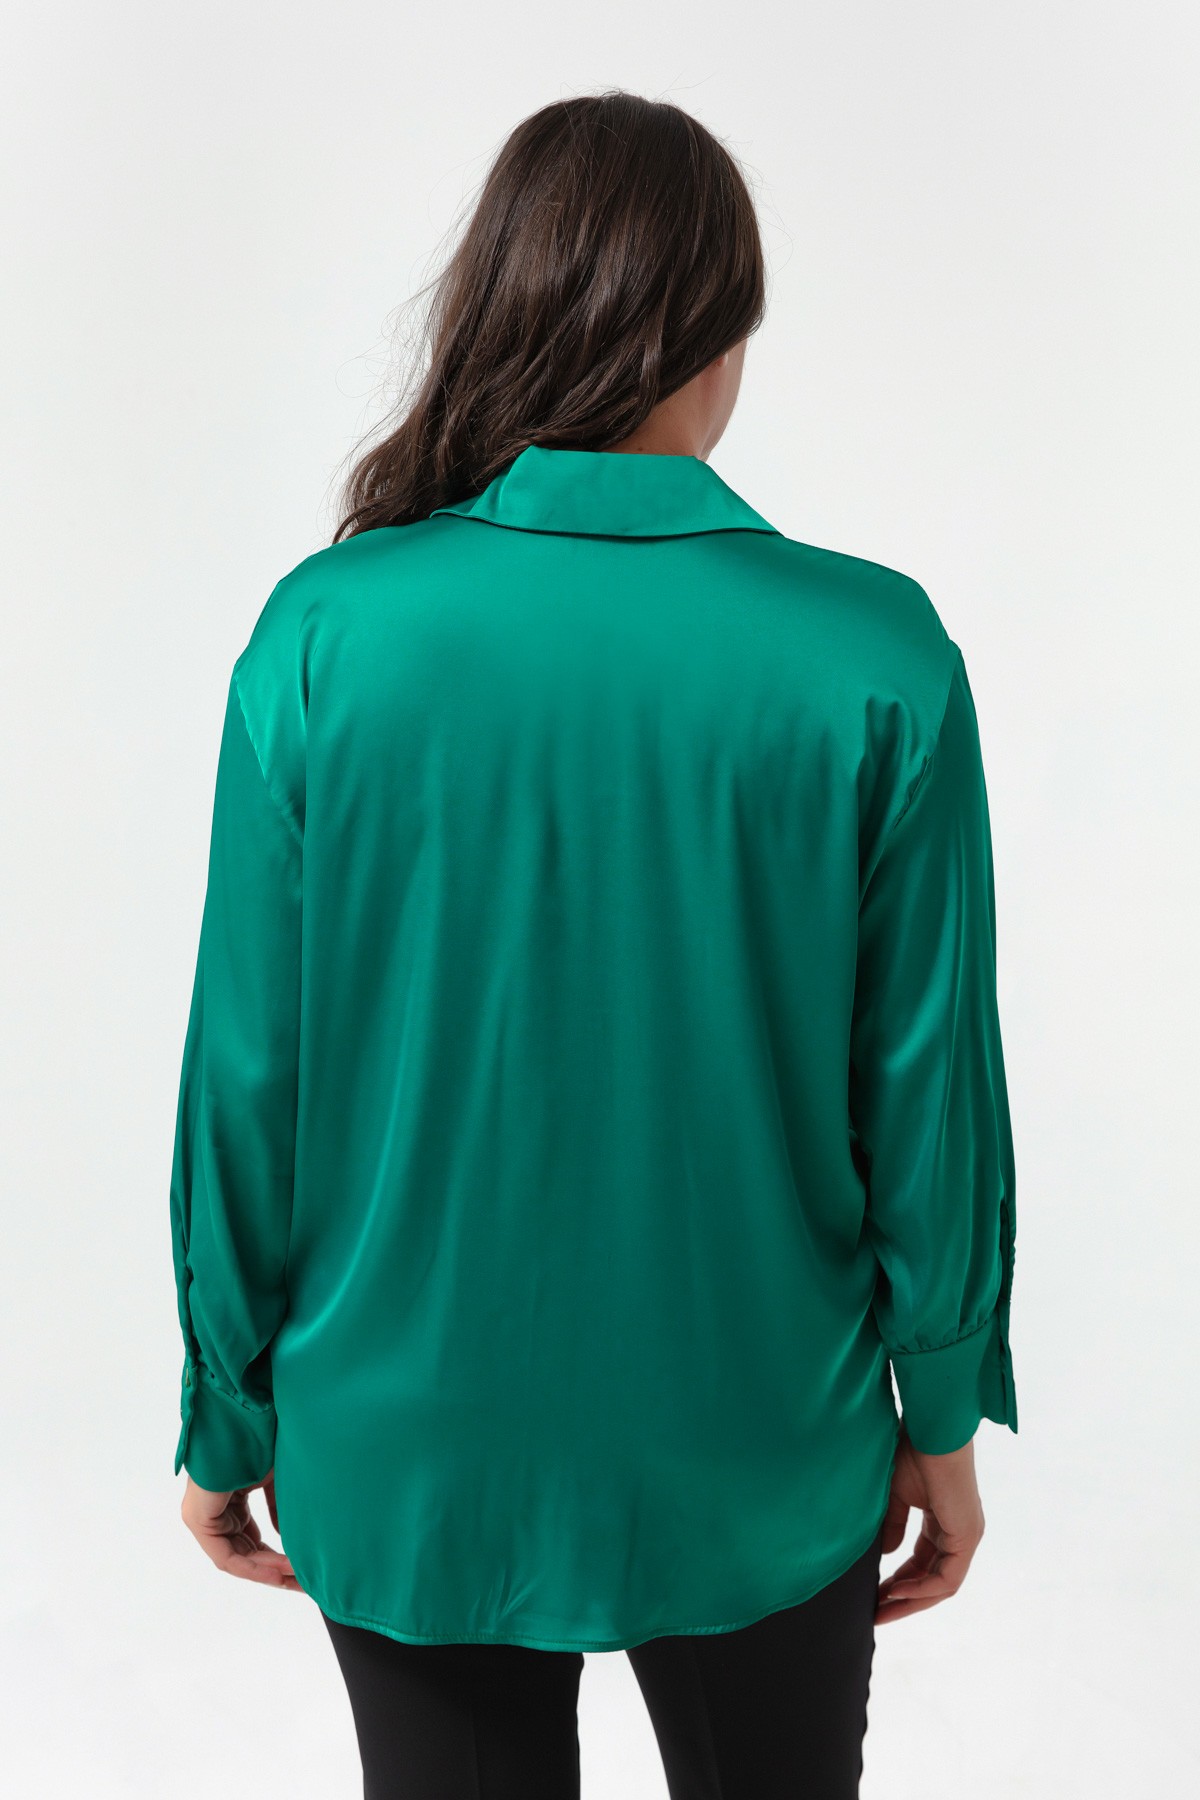 Kadın Büyük Beden Saten Gömlek - Zümrüt Yeşili